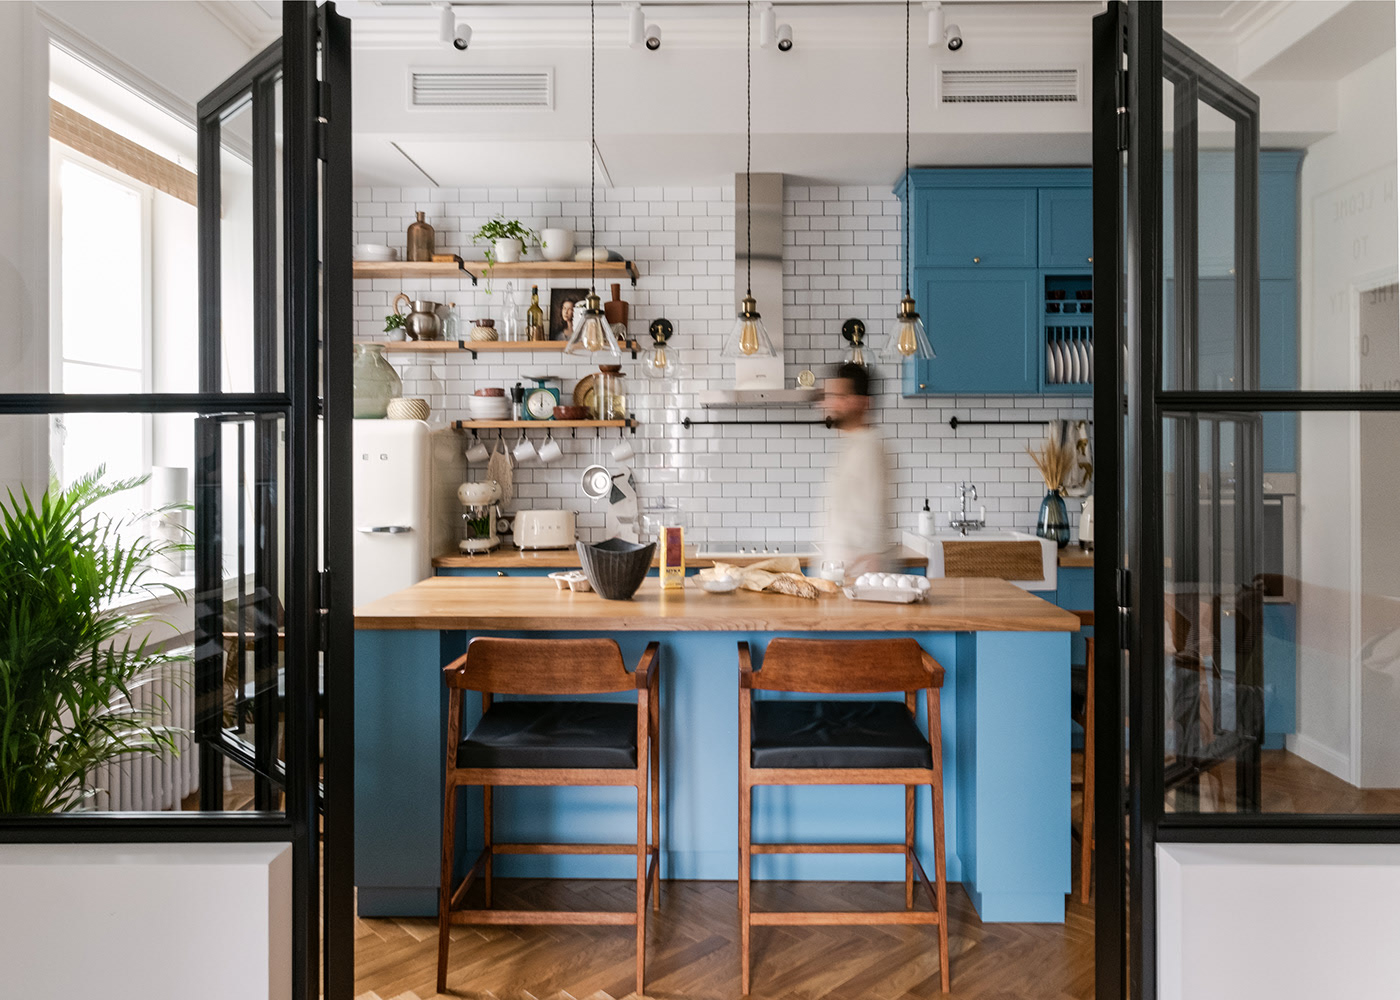 Để tạo sự nổi bật cũng như dịu mắt cho khu vực nấu nướng, gam màu xanh lam đã được sử dụng cho tủ lưu trữ và đảo bếp, xung quanh là gạch ốp màu trắng sáng bóng.